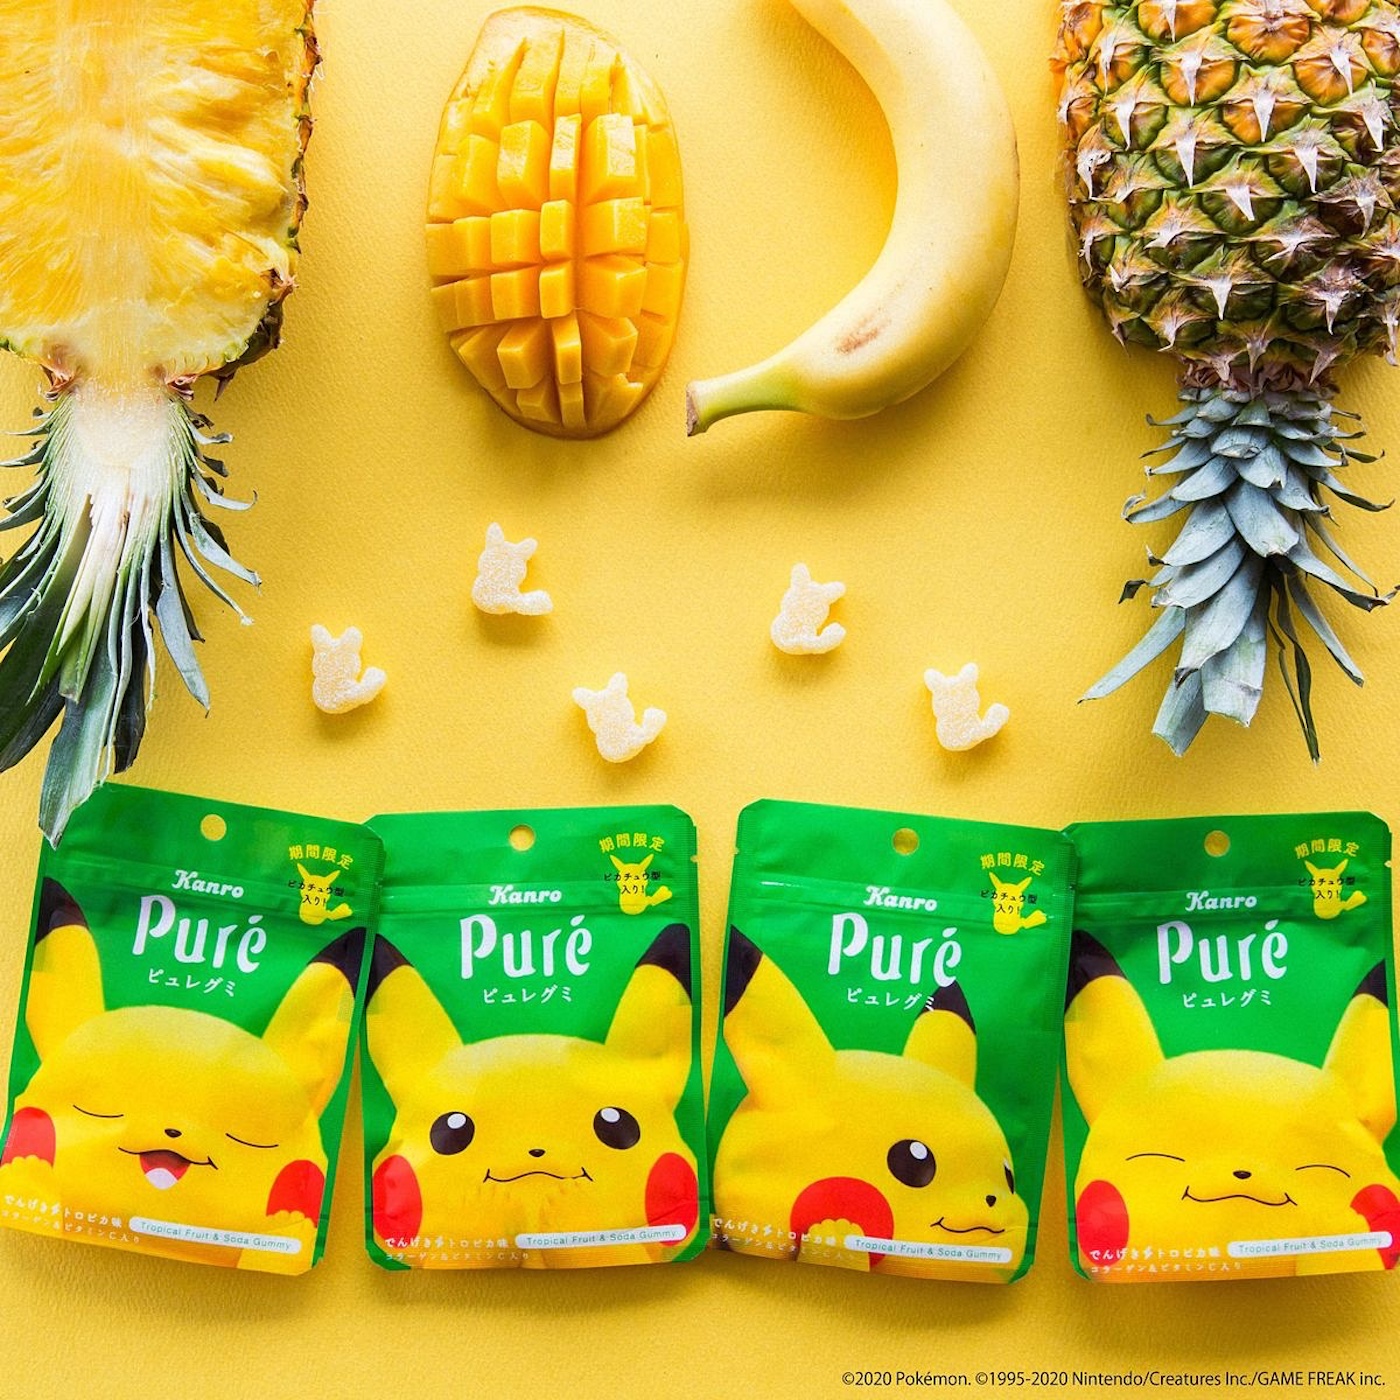 Des bonbons Pikachu dévoilé par la société Kanro au Japon.